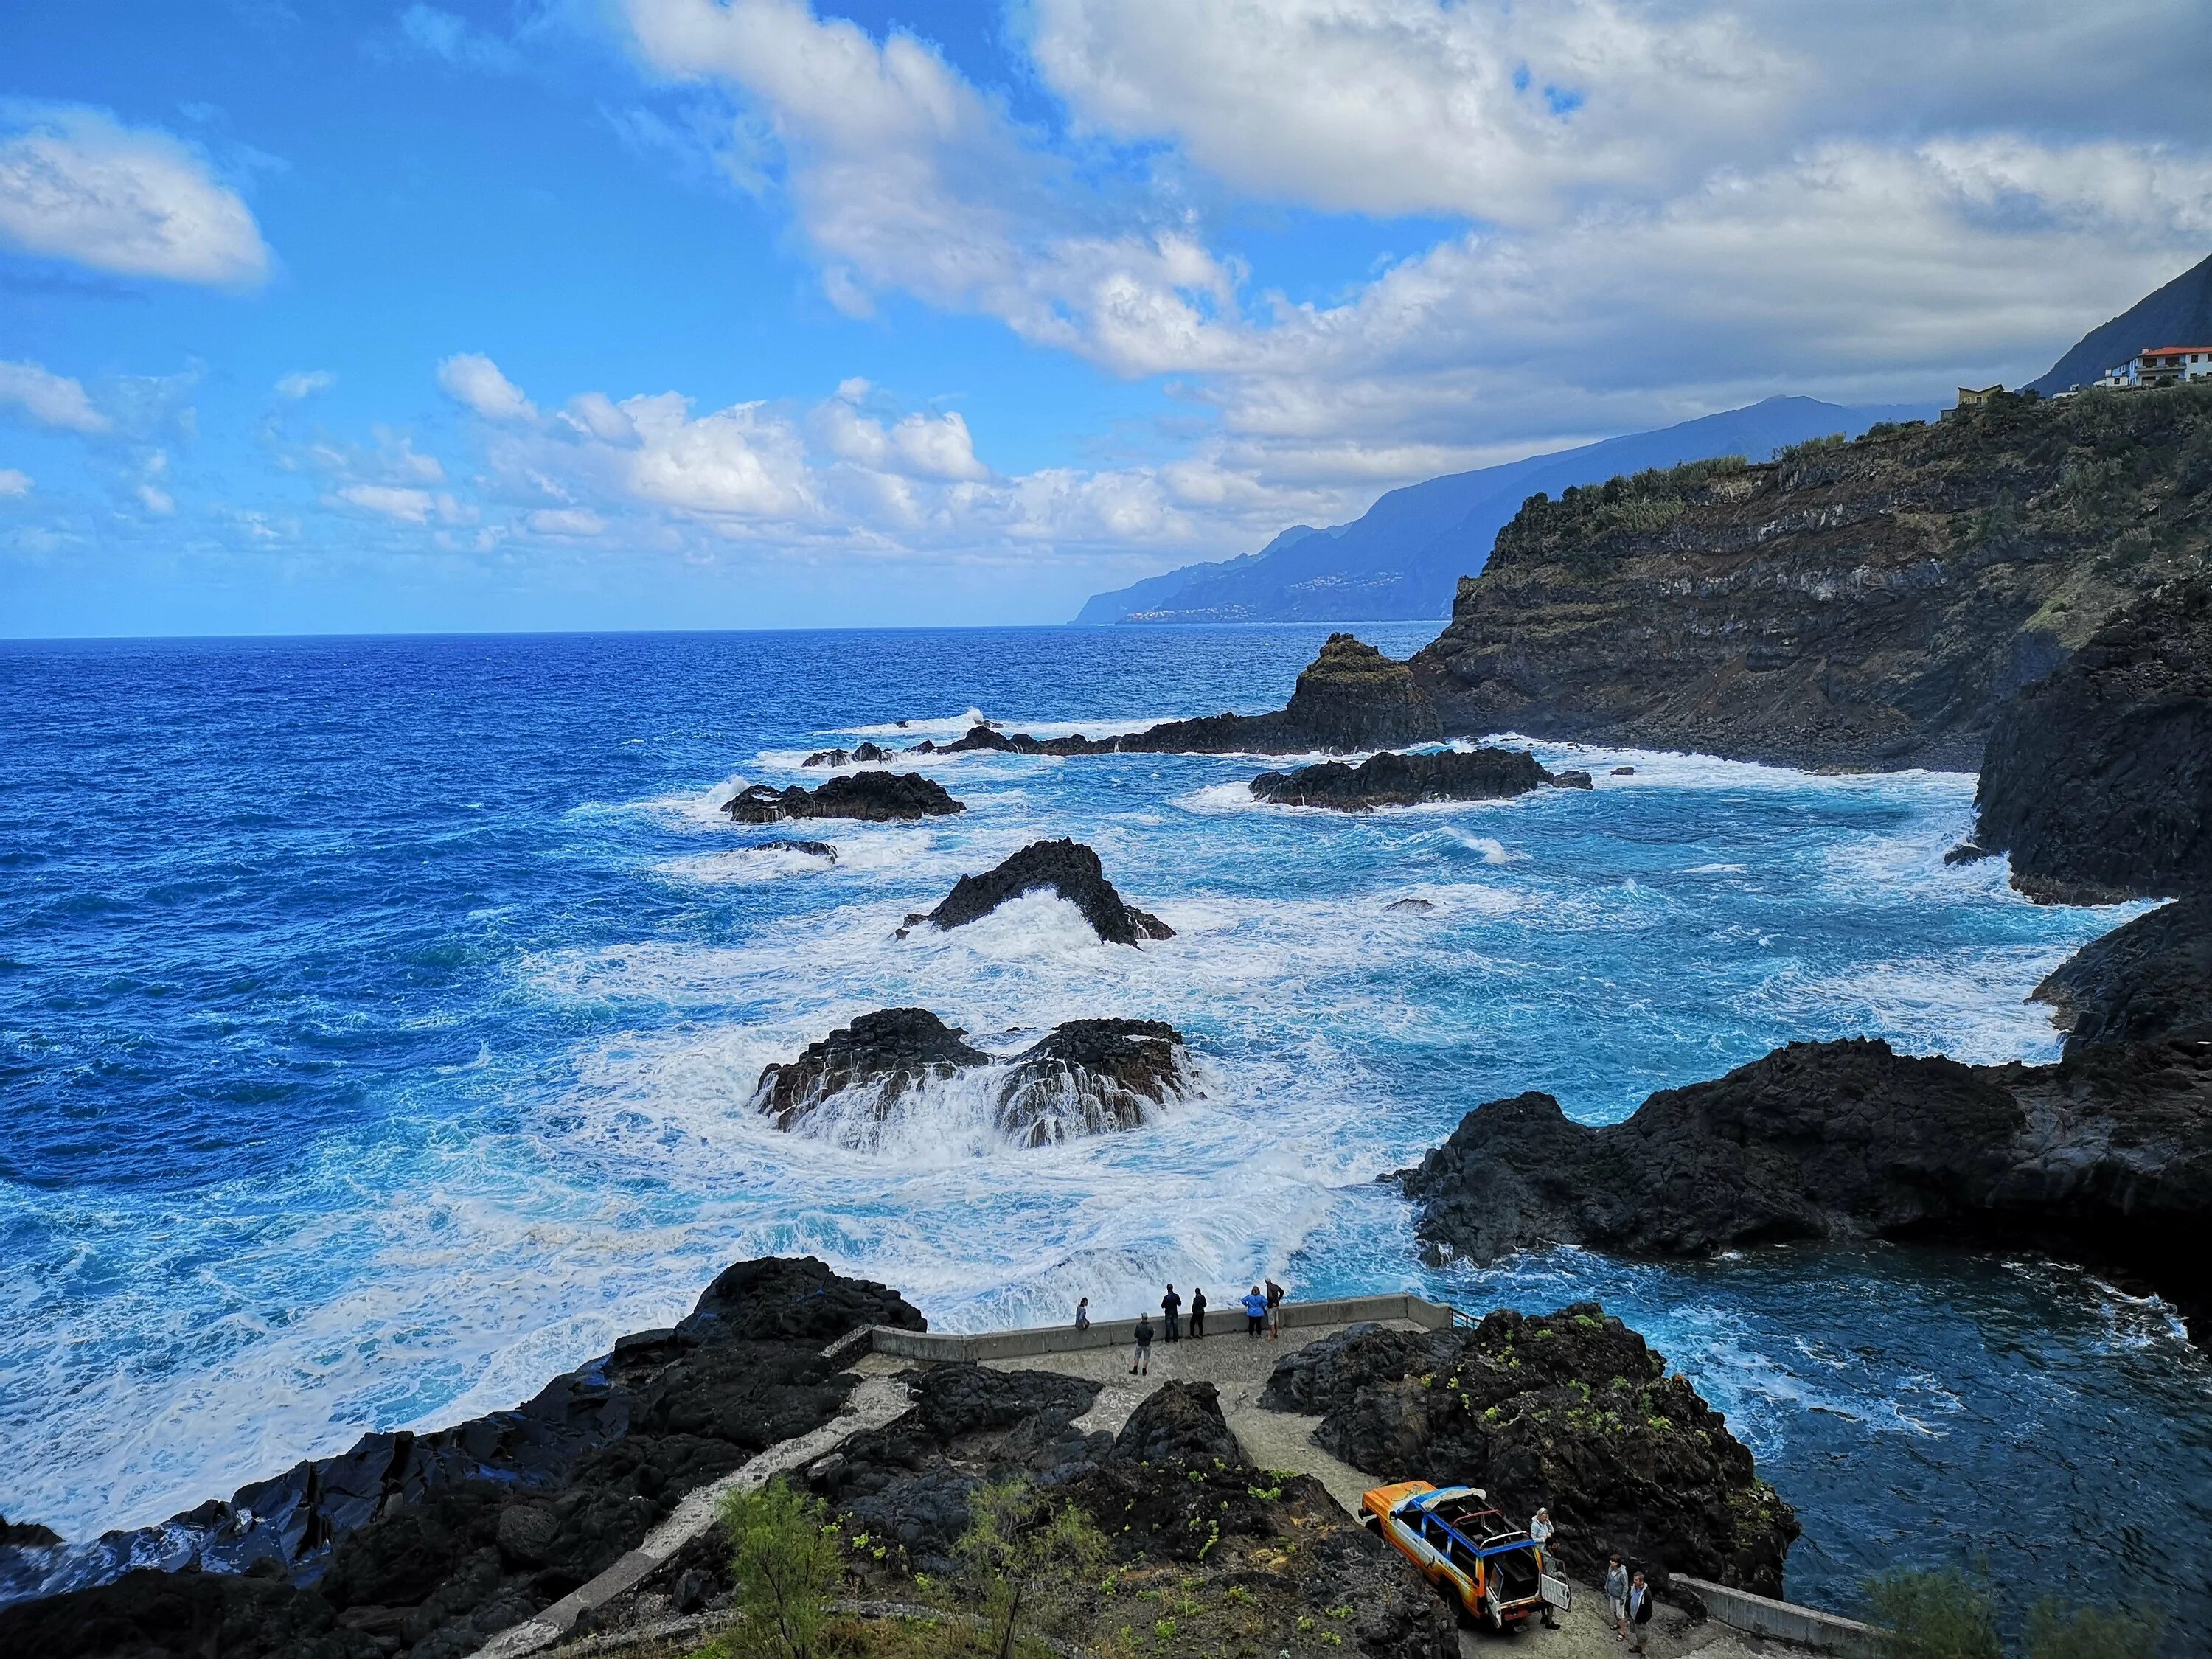 Атлантический океан вопрос. Остров Мадейра, Атлантический океан. Мадейра океан. Остров Гомера Канарские острова. Атлантический океан и остров Мадера.